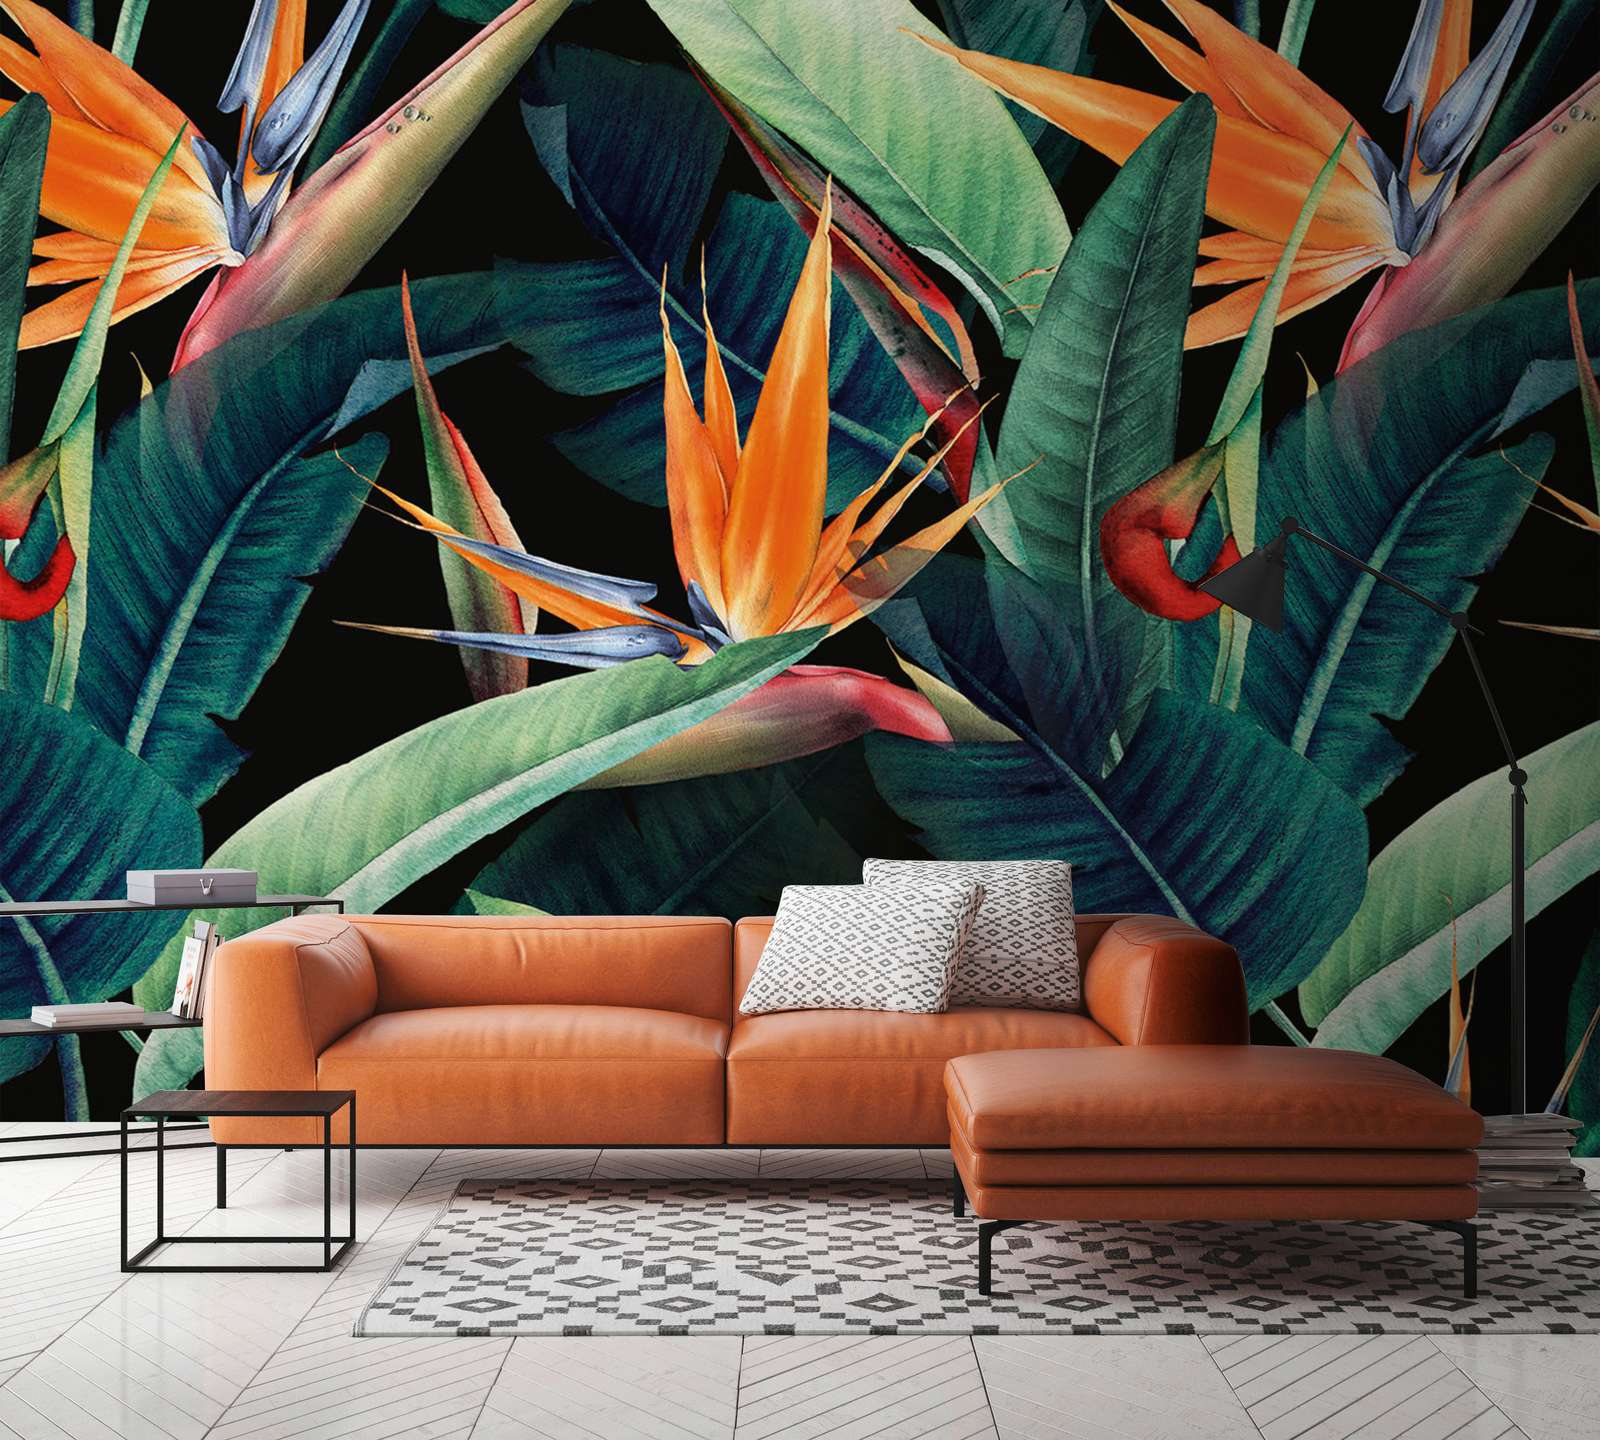             Fototapete Dschungelmotiv mit Blättern gemalt – Grün, Orange, Bunt
        